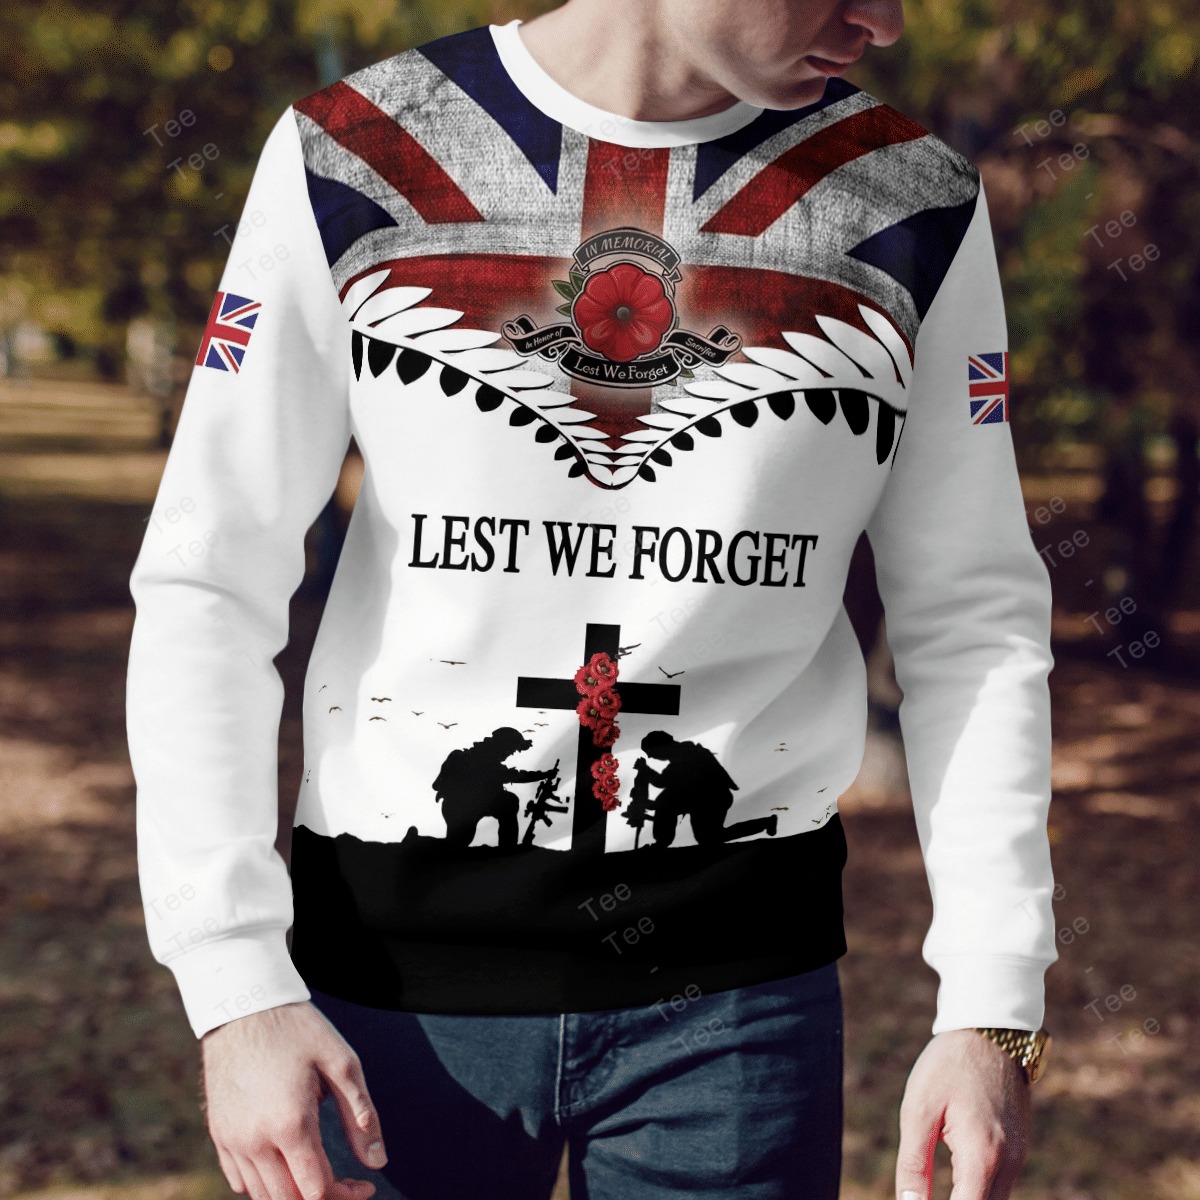 Lest we forget Veteran American flag 3d shirt, hoodie 1